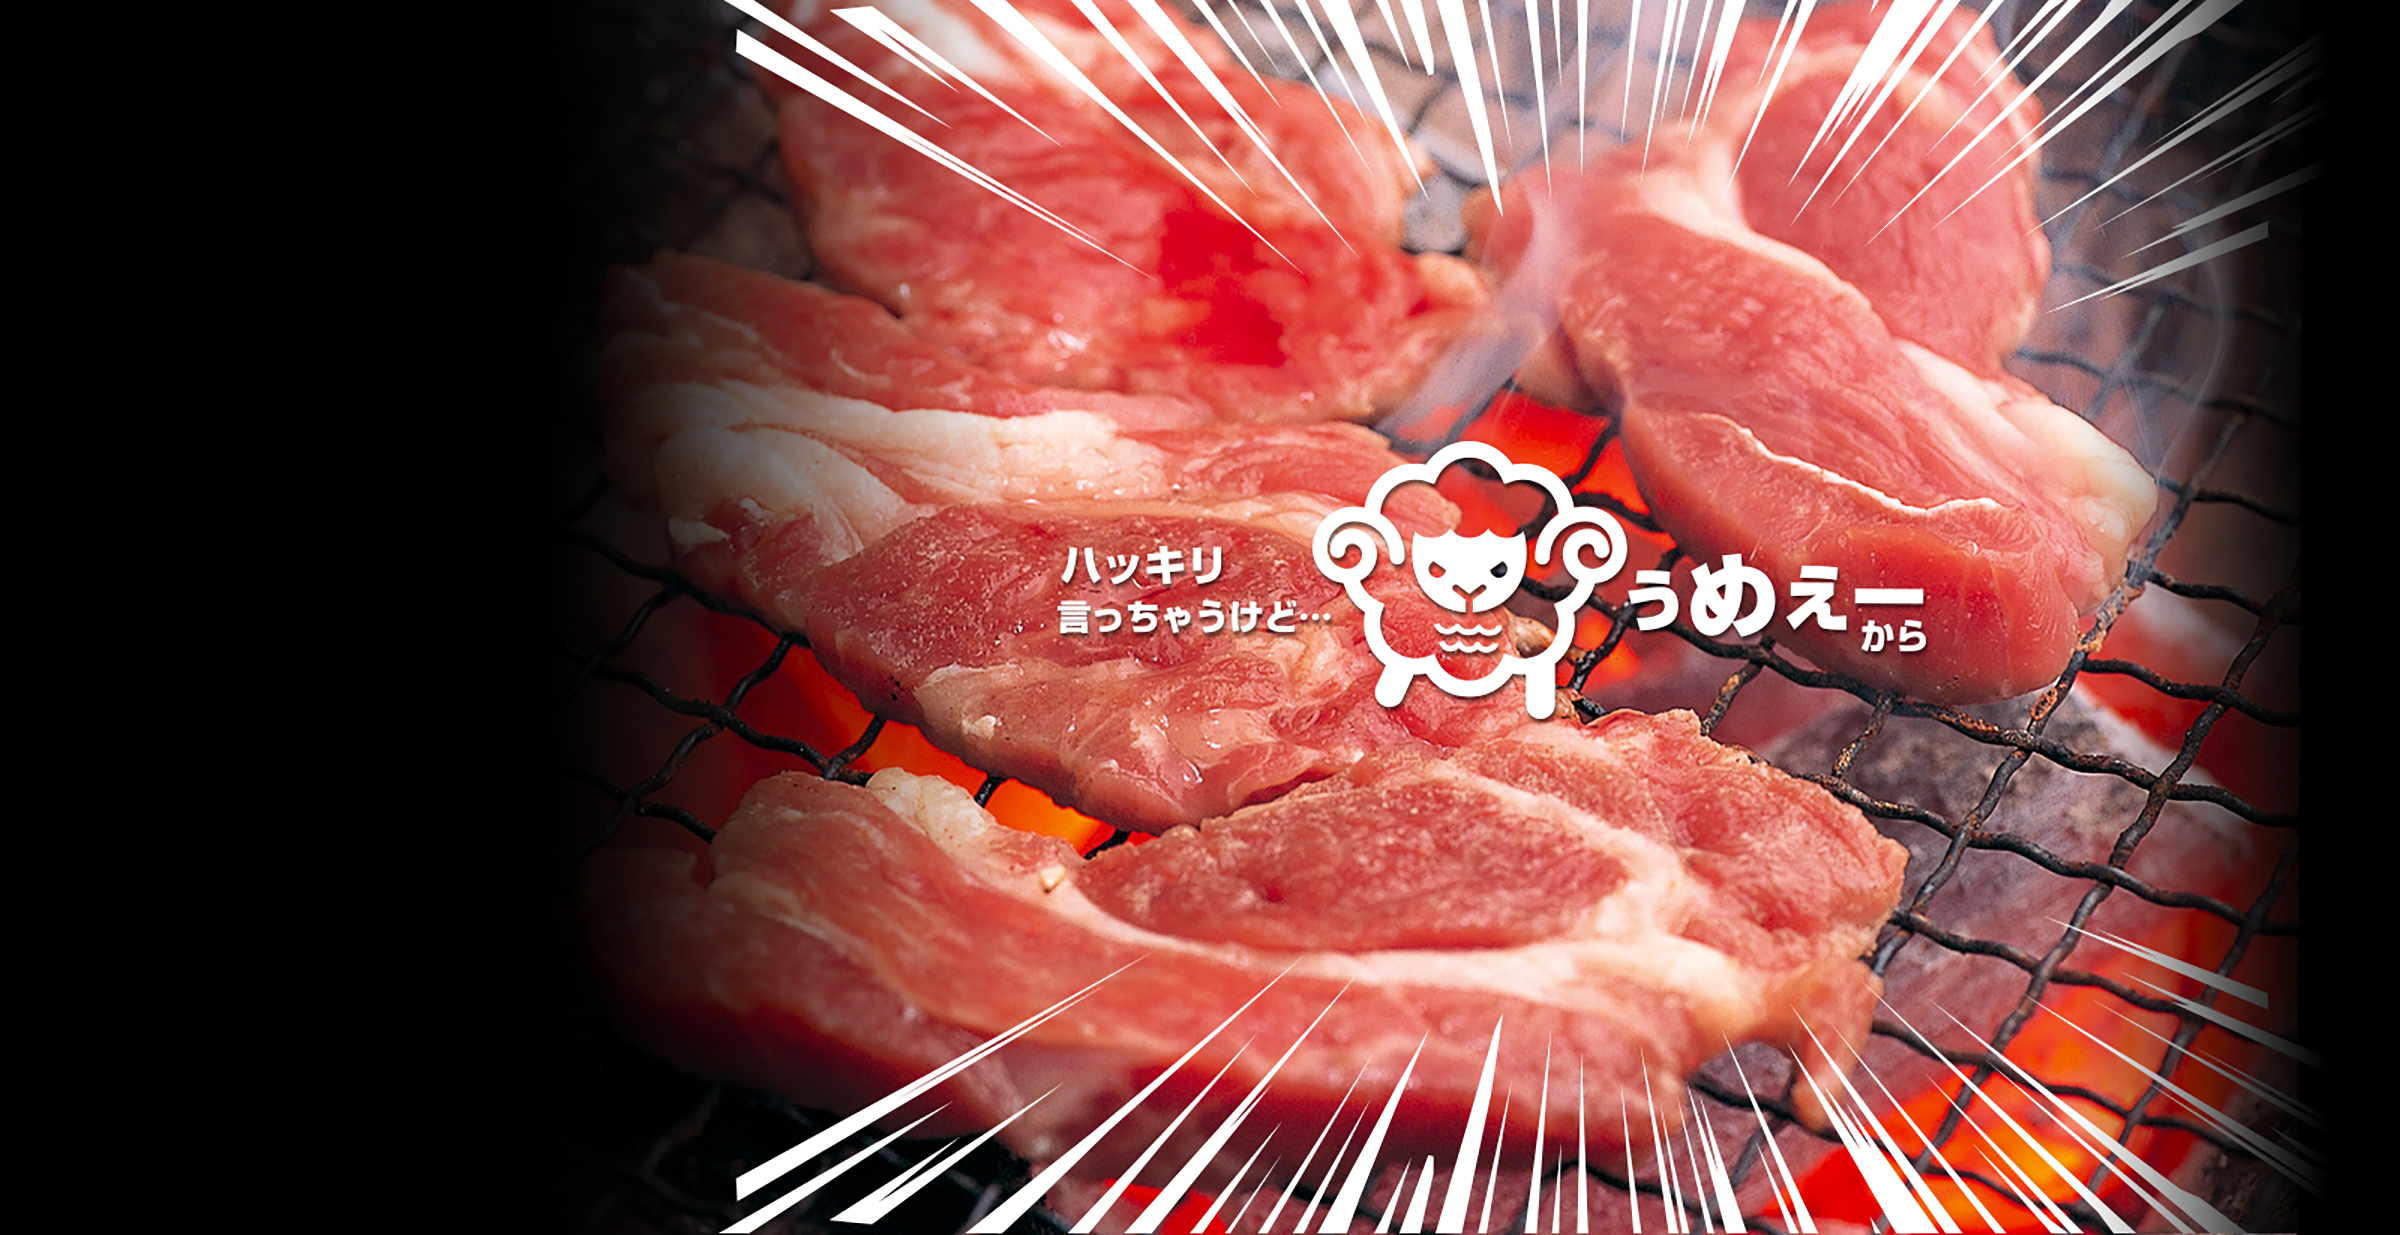 札幌のおいしい焼肉店 肉の浅鞍 すすきの炭火千生別邸